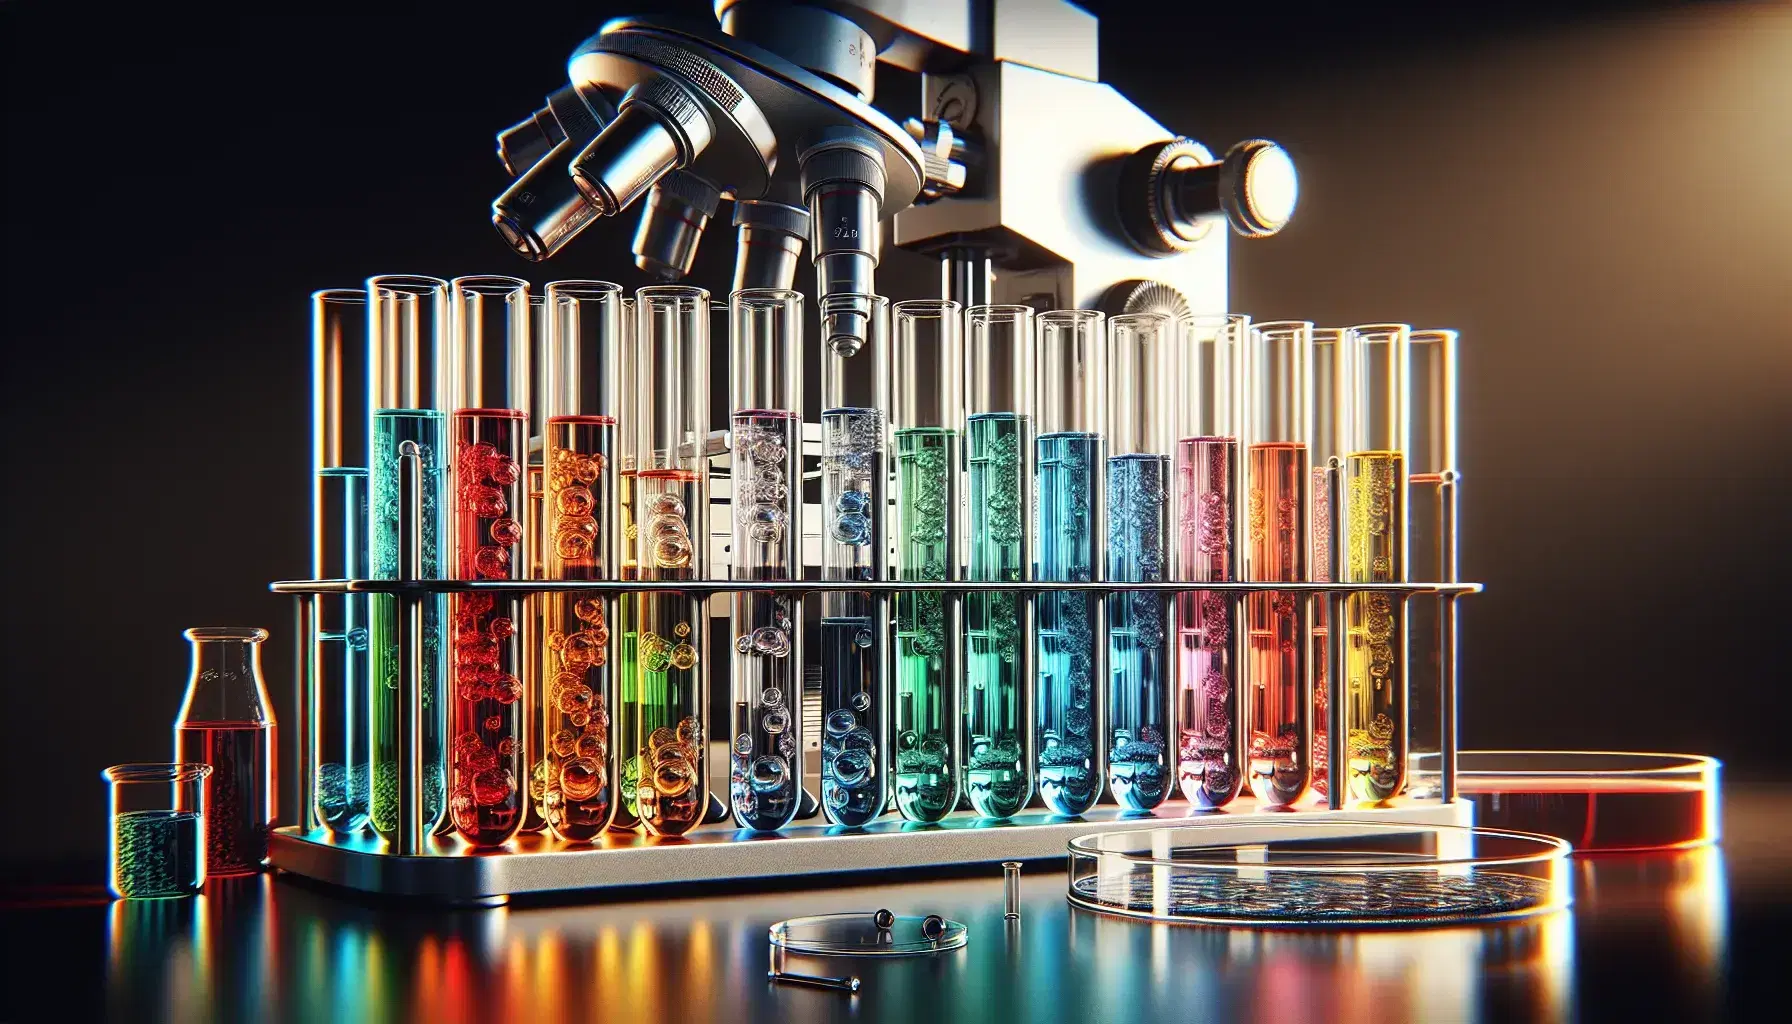 Tubos de ensayo de cristal con líquidos de colores del arcoíris en soporte metálico y microscopio plateado con detalles negros al fondo, junto a una placa de Petri.